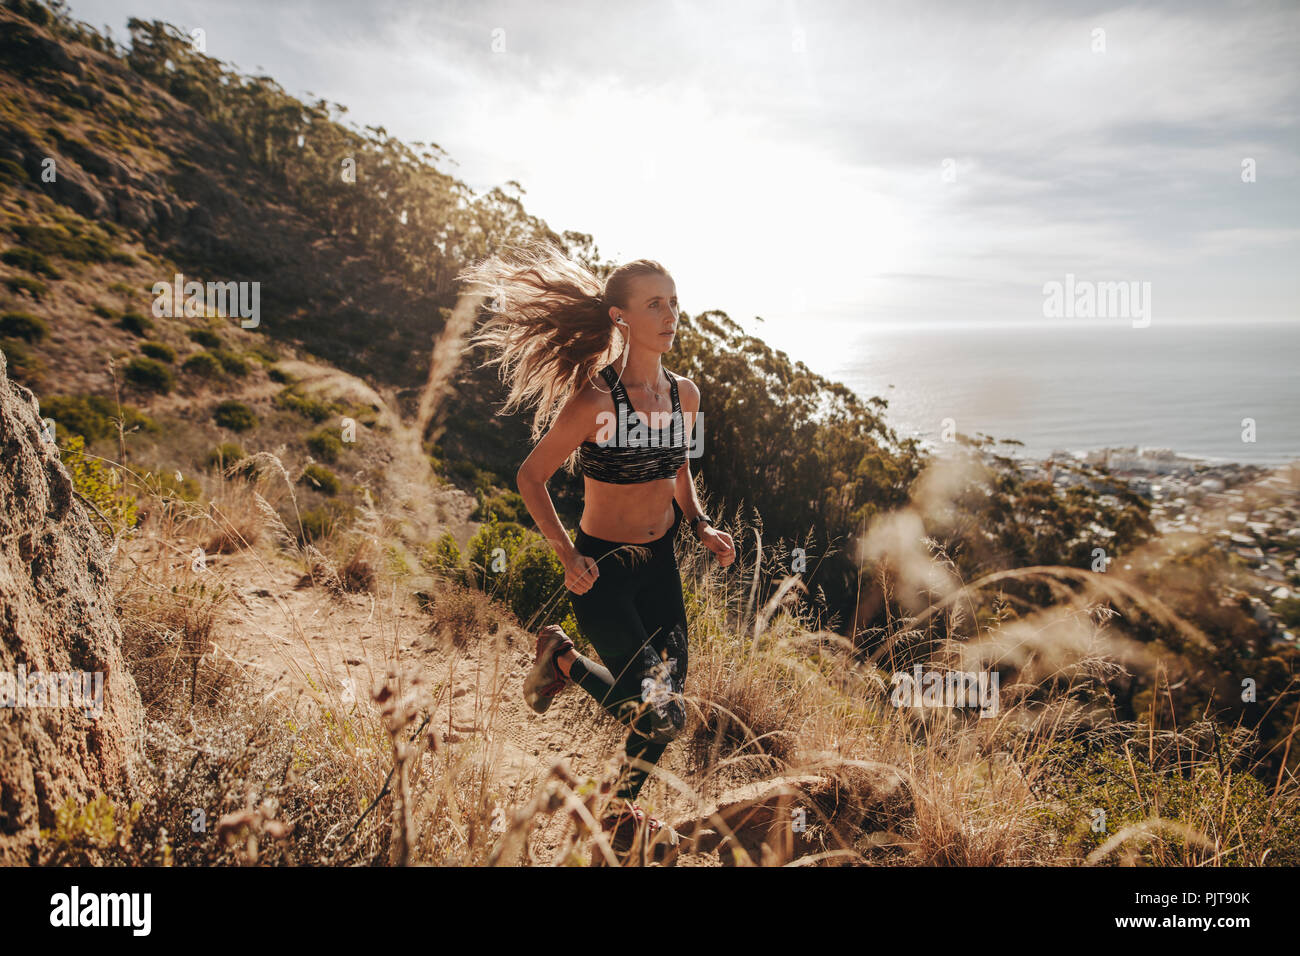 mujer deportiva de entrenamiento para cross country run sobre el sendero de montaña. Hembra corriendo sobre un sendero rocoso en la ladera. Foto de stock